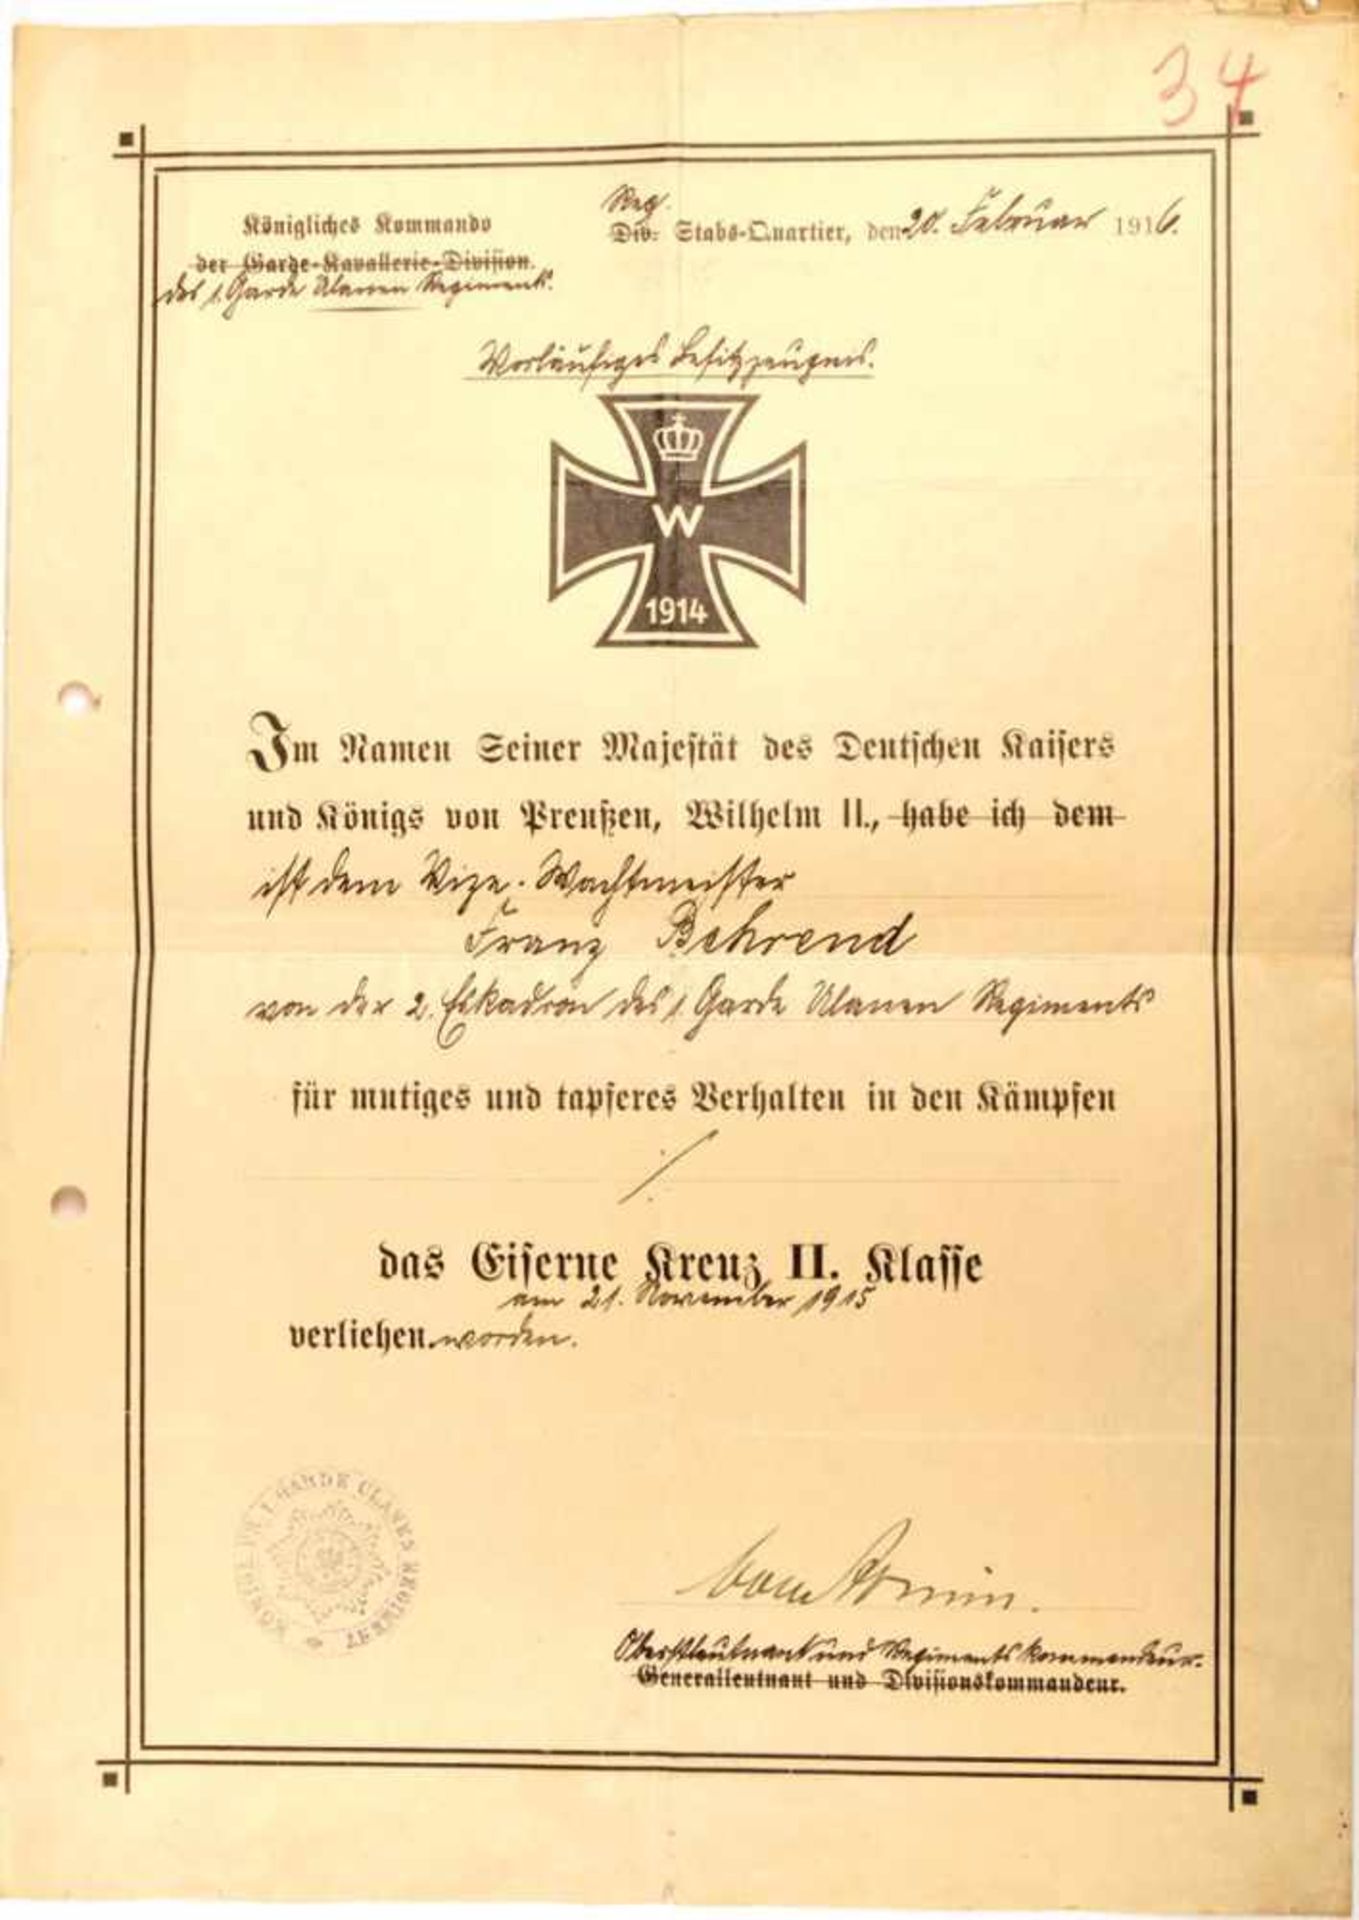 VORLÄUFIGES BESITZZEUGNIS EK II 1914, Vordruck d. Kgl. Kdos. d. Garde-Kavallerie-Division, f. e.